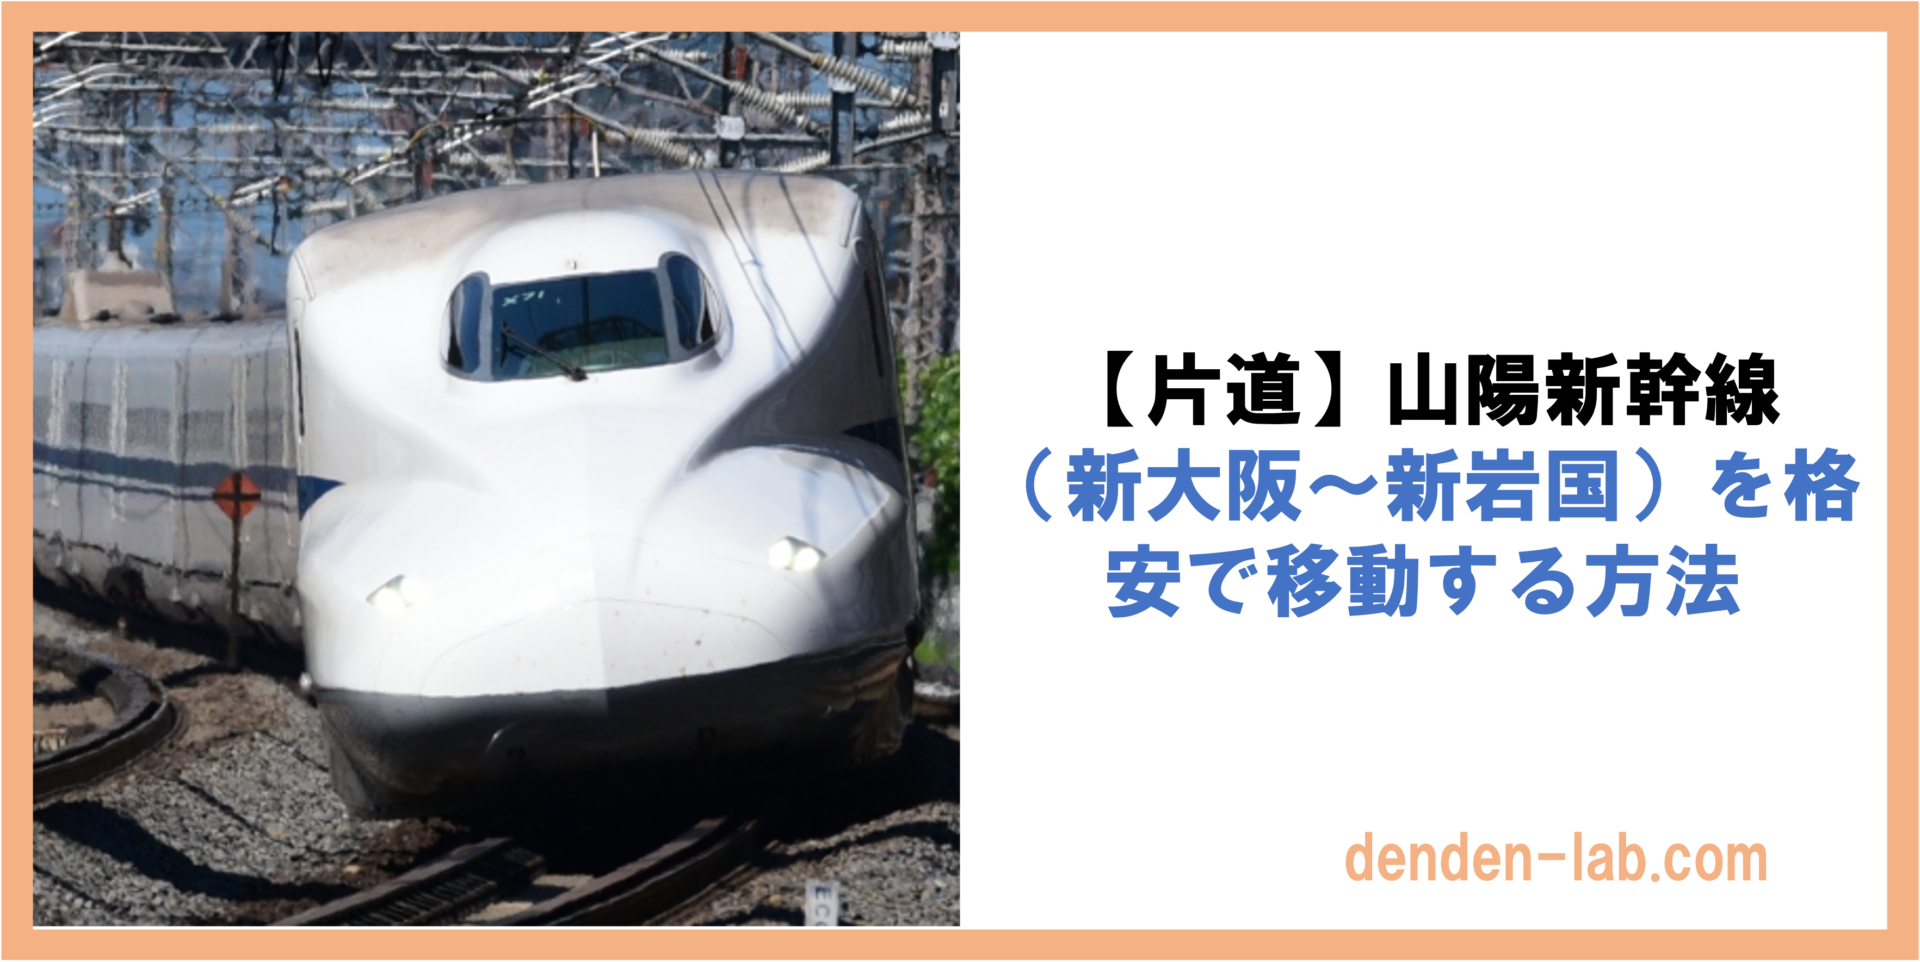 【片道】山陽新幹線 （新大阪〜新岩国）を格安で移動する方法